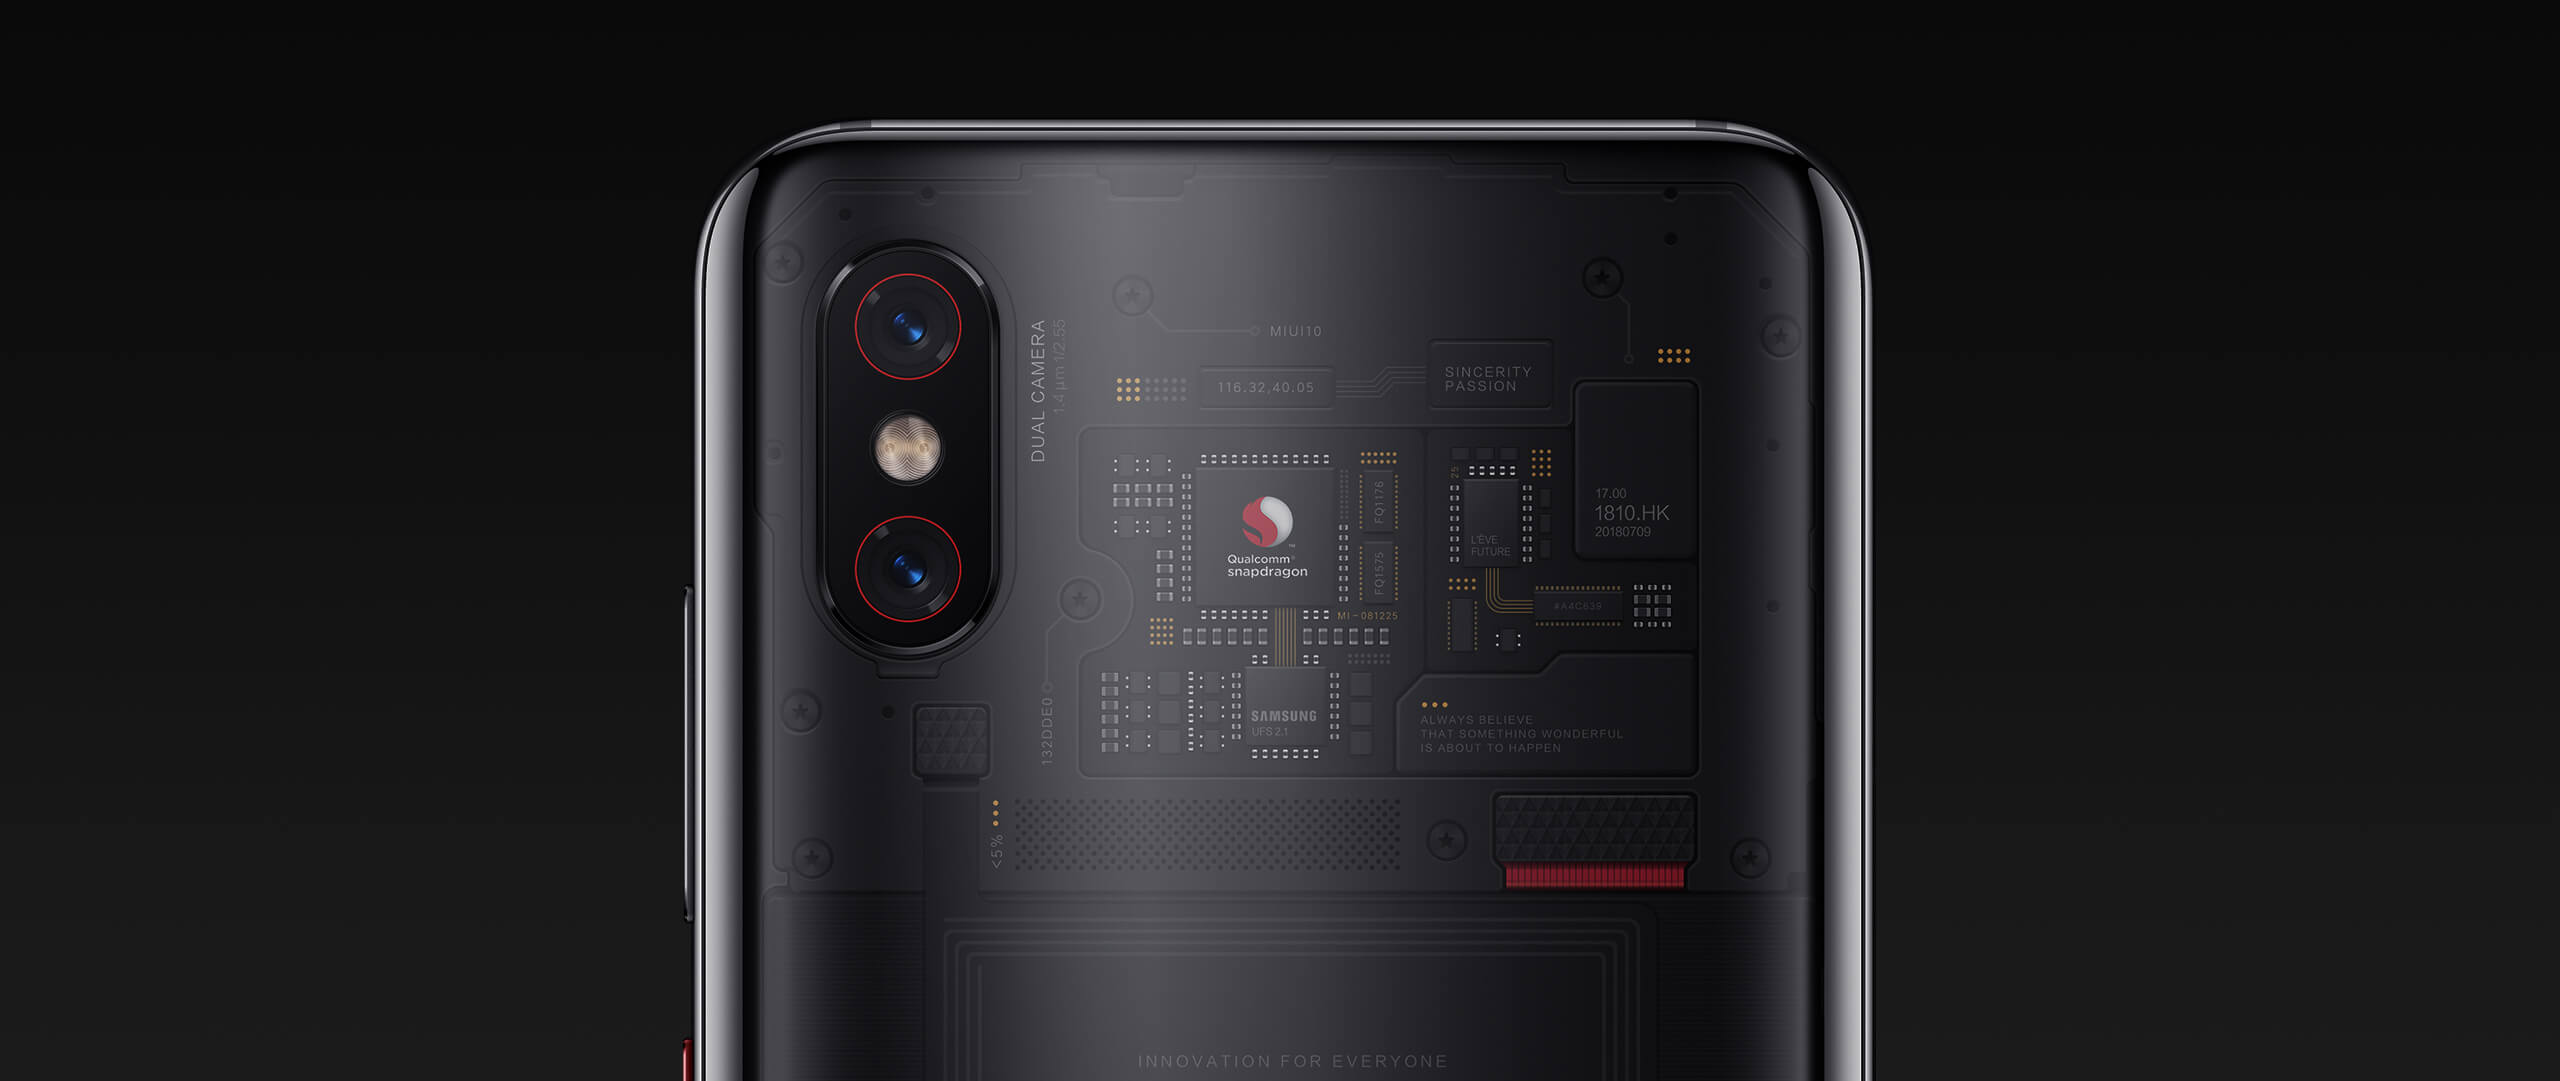 Цифросити - Самый необычный Xiaomi - обзор флагманского смартфона Mi 8 Pro